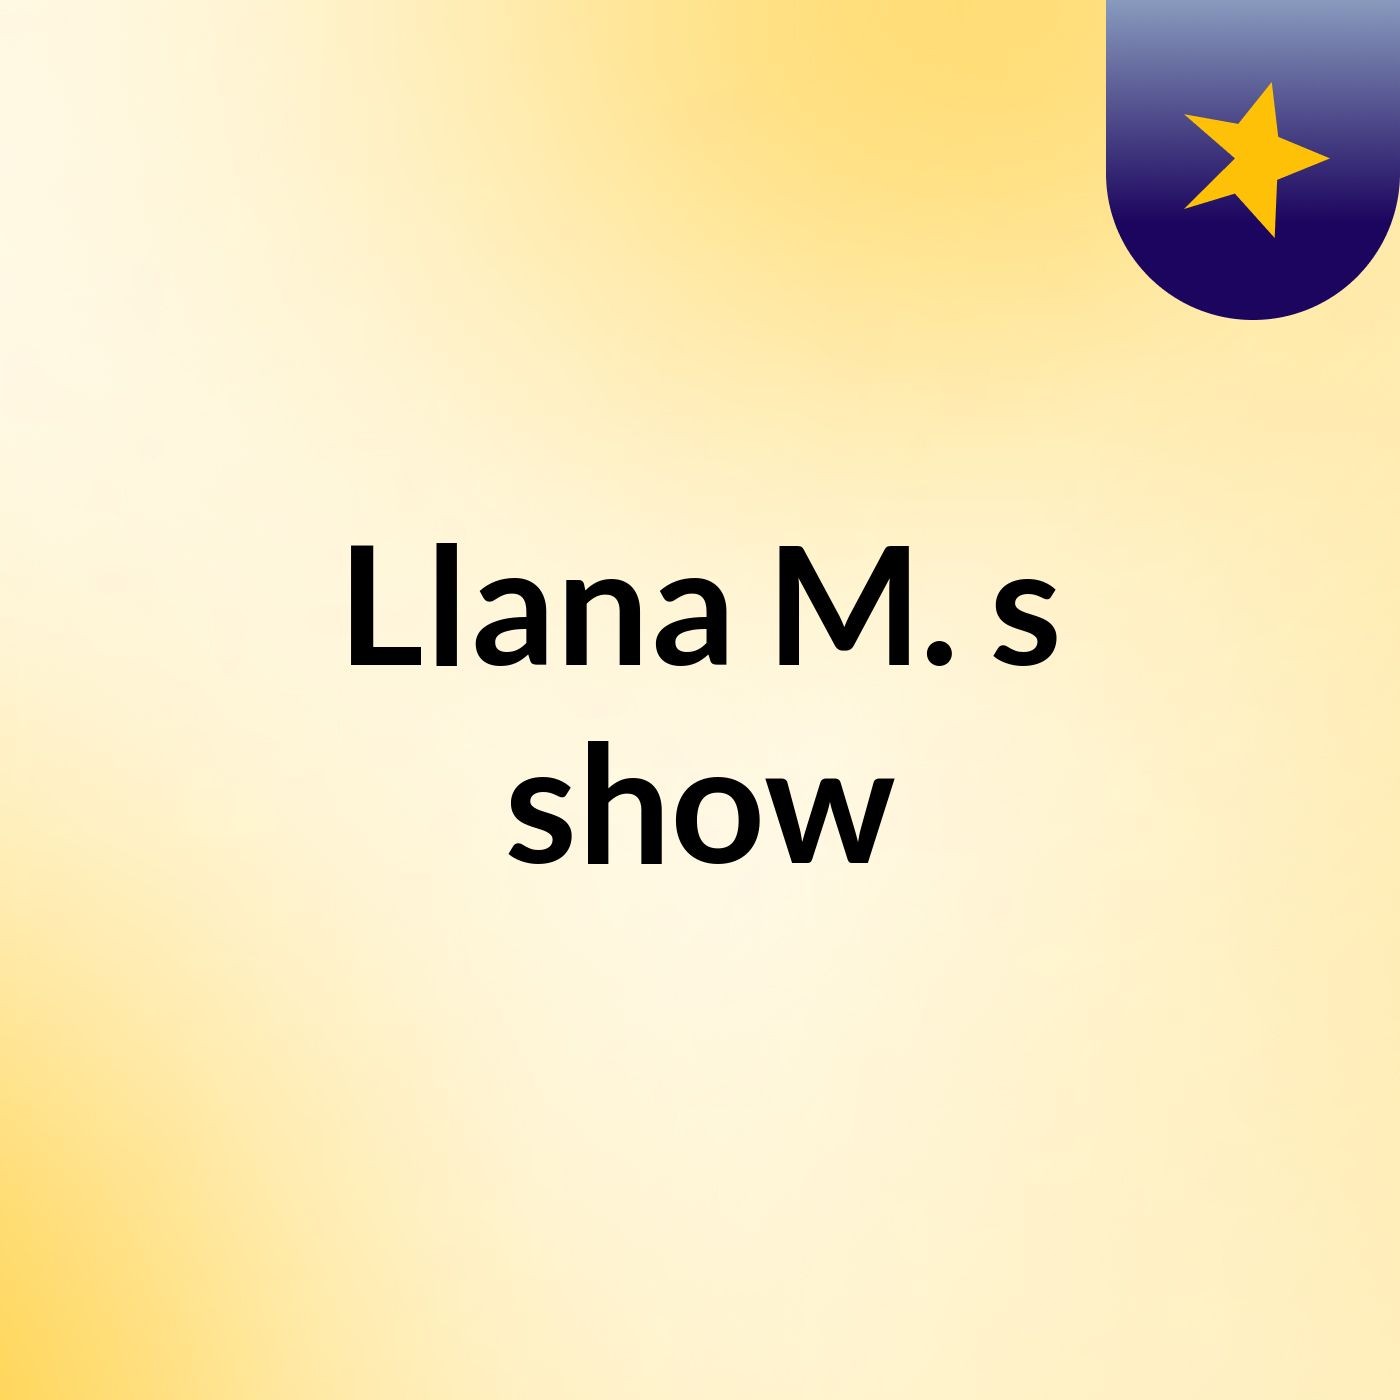 Llana M.'s show